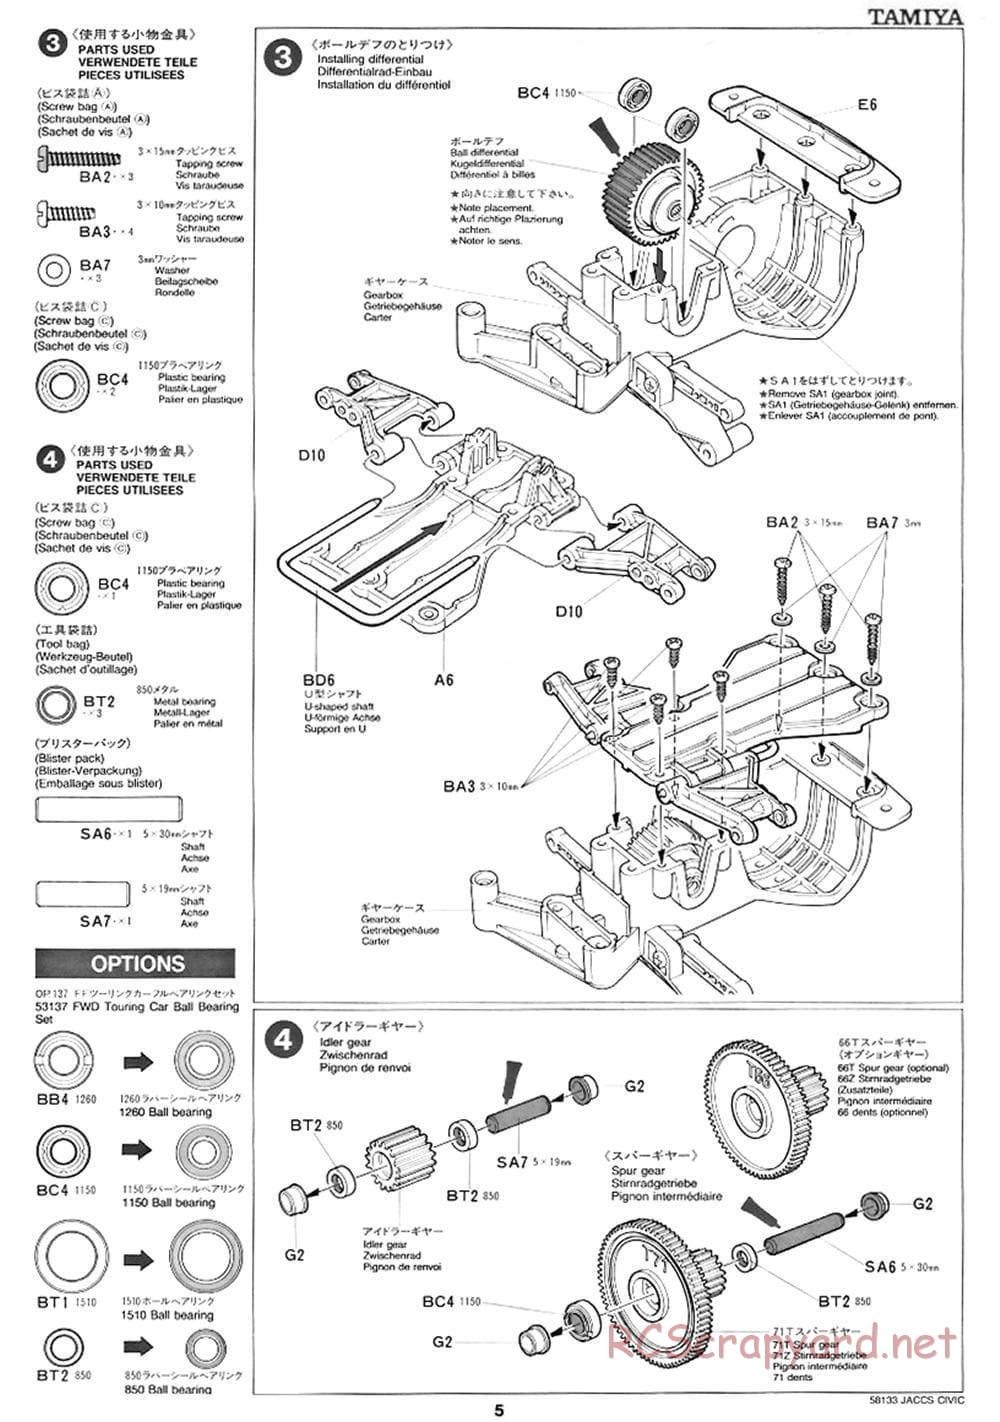 Tamiya - JACCS Honda Civic - FF-01 Chassis - Manual - Page 5